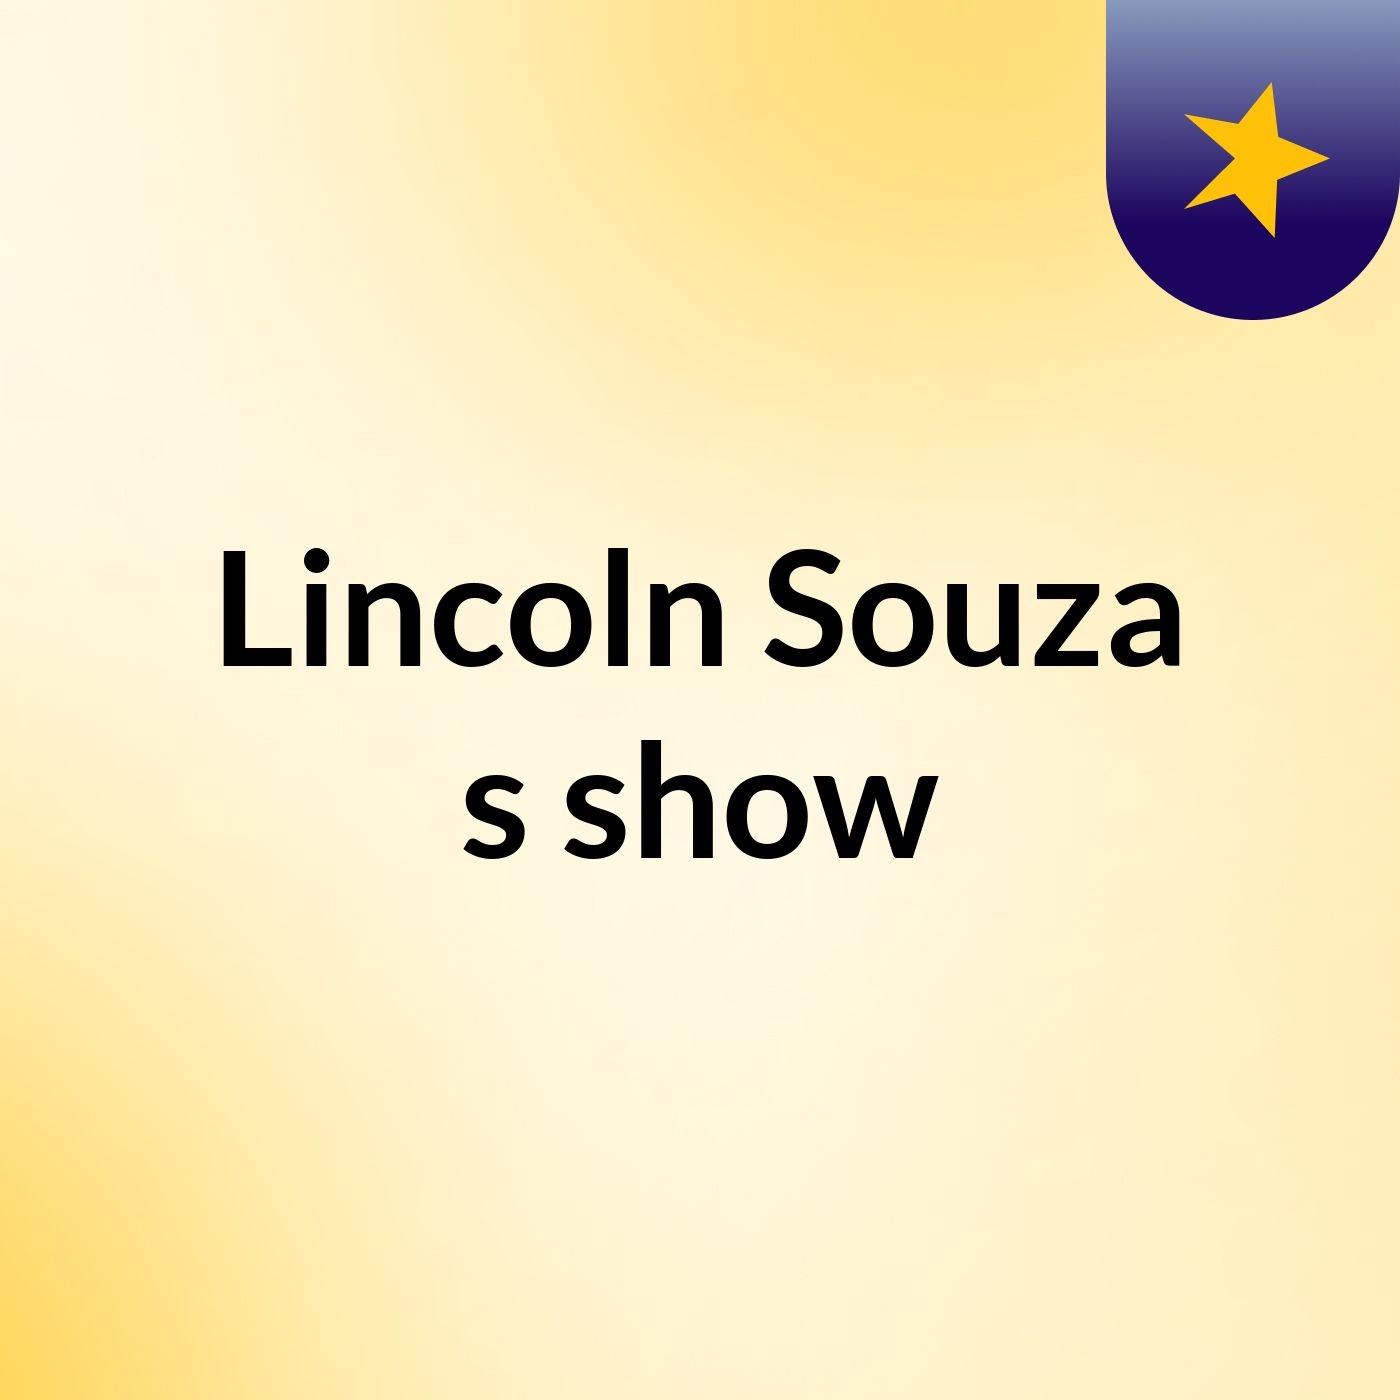 Lincoln Souza's show